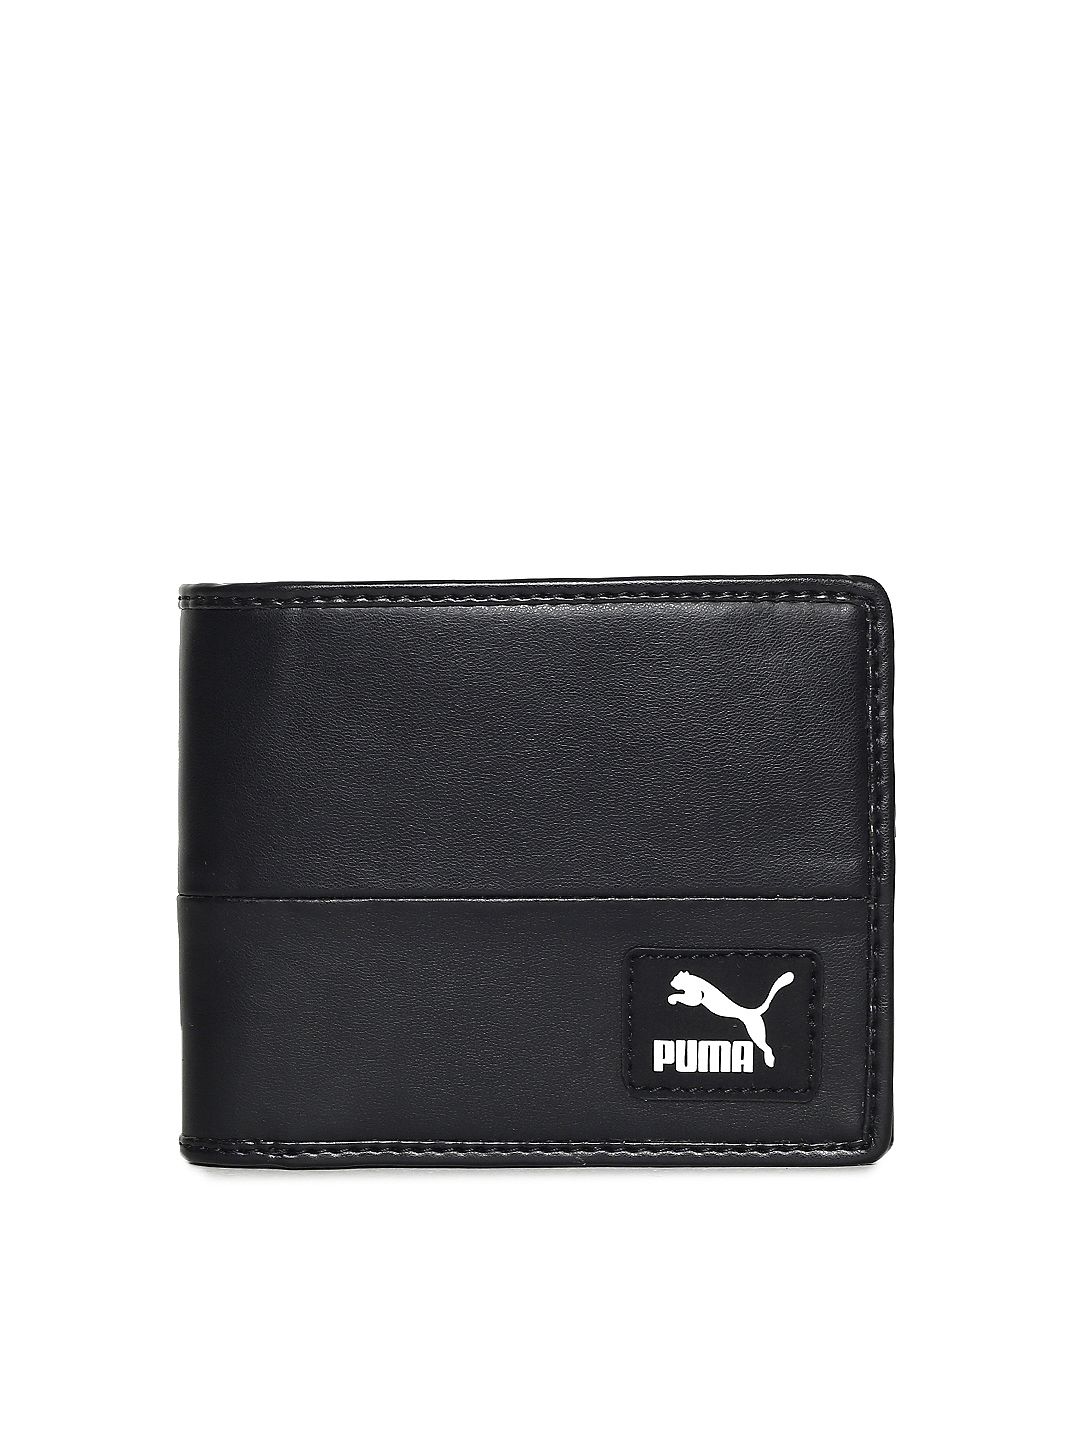 puma bmw wallet grey